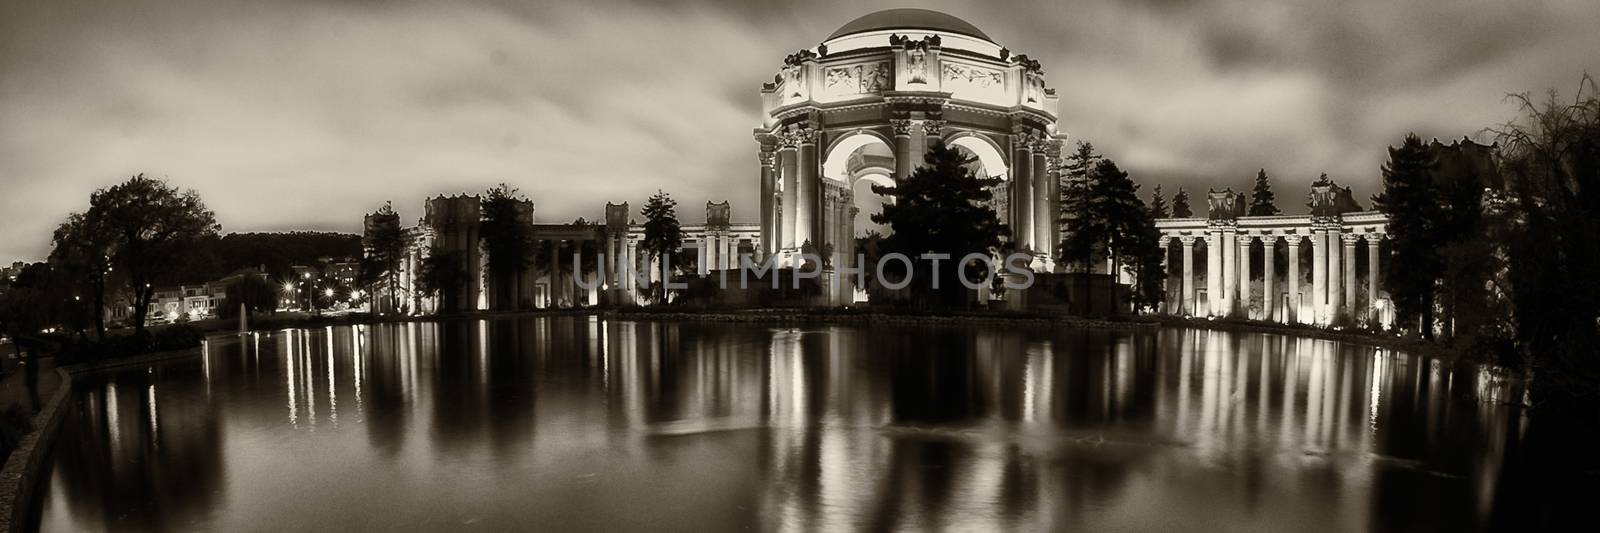 Reflection of Palace Of Fine Arts, Marina District, San Francisc by CelsoDiniz